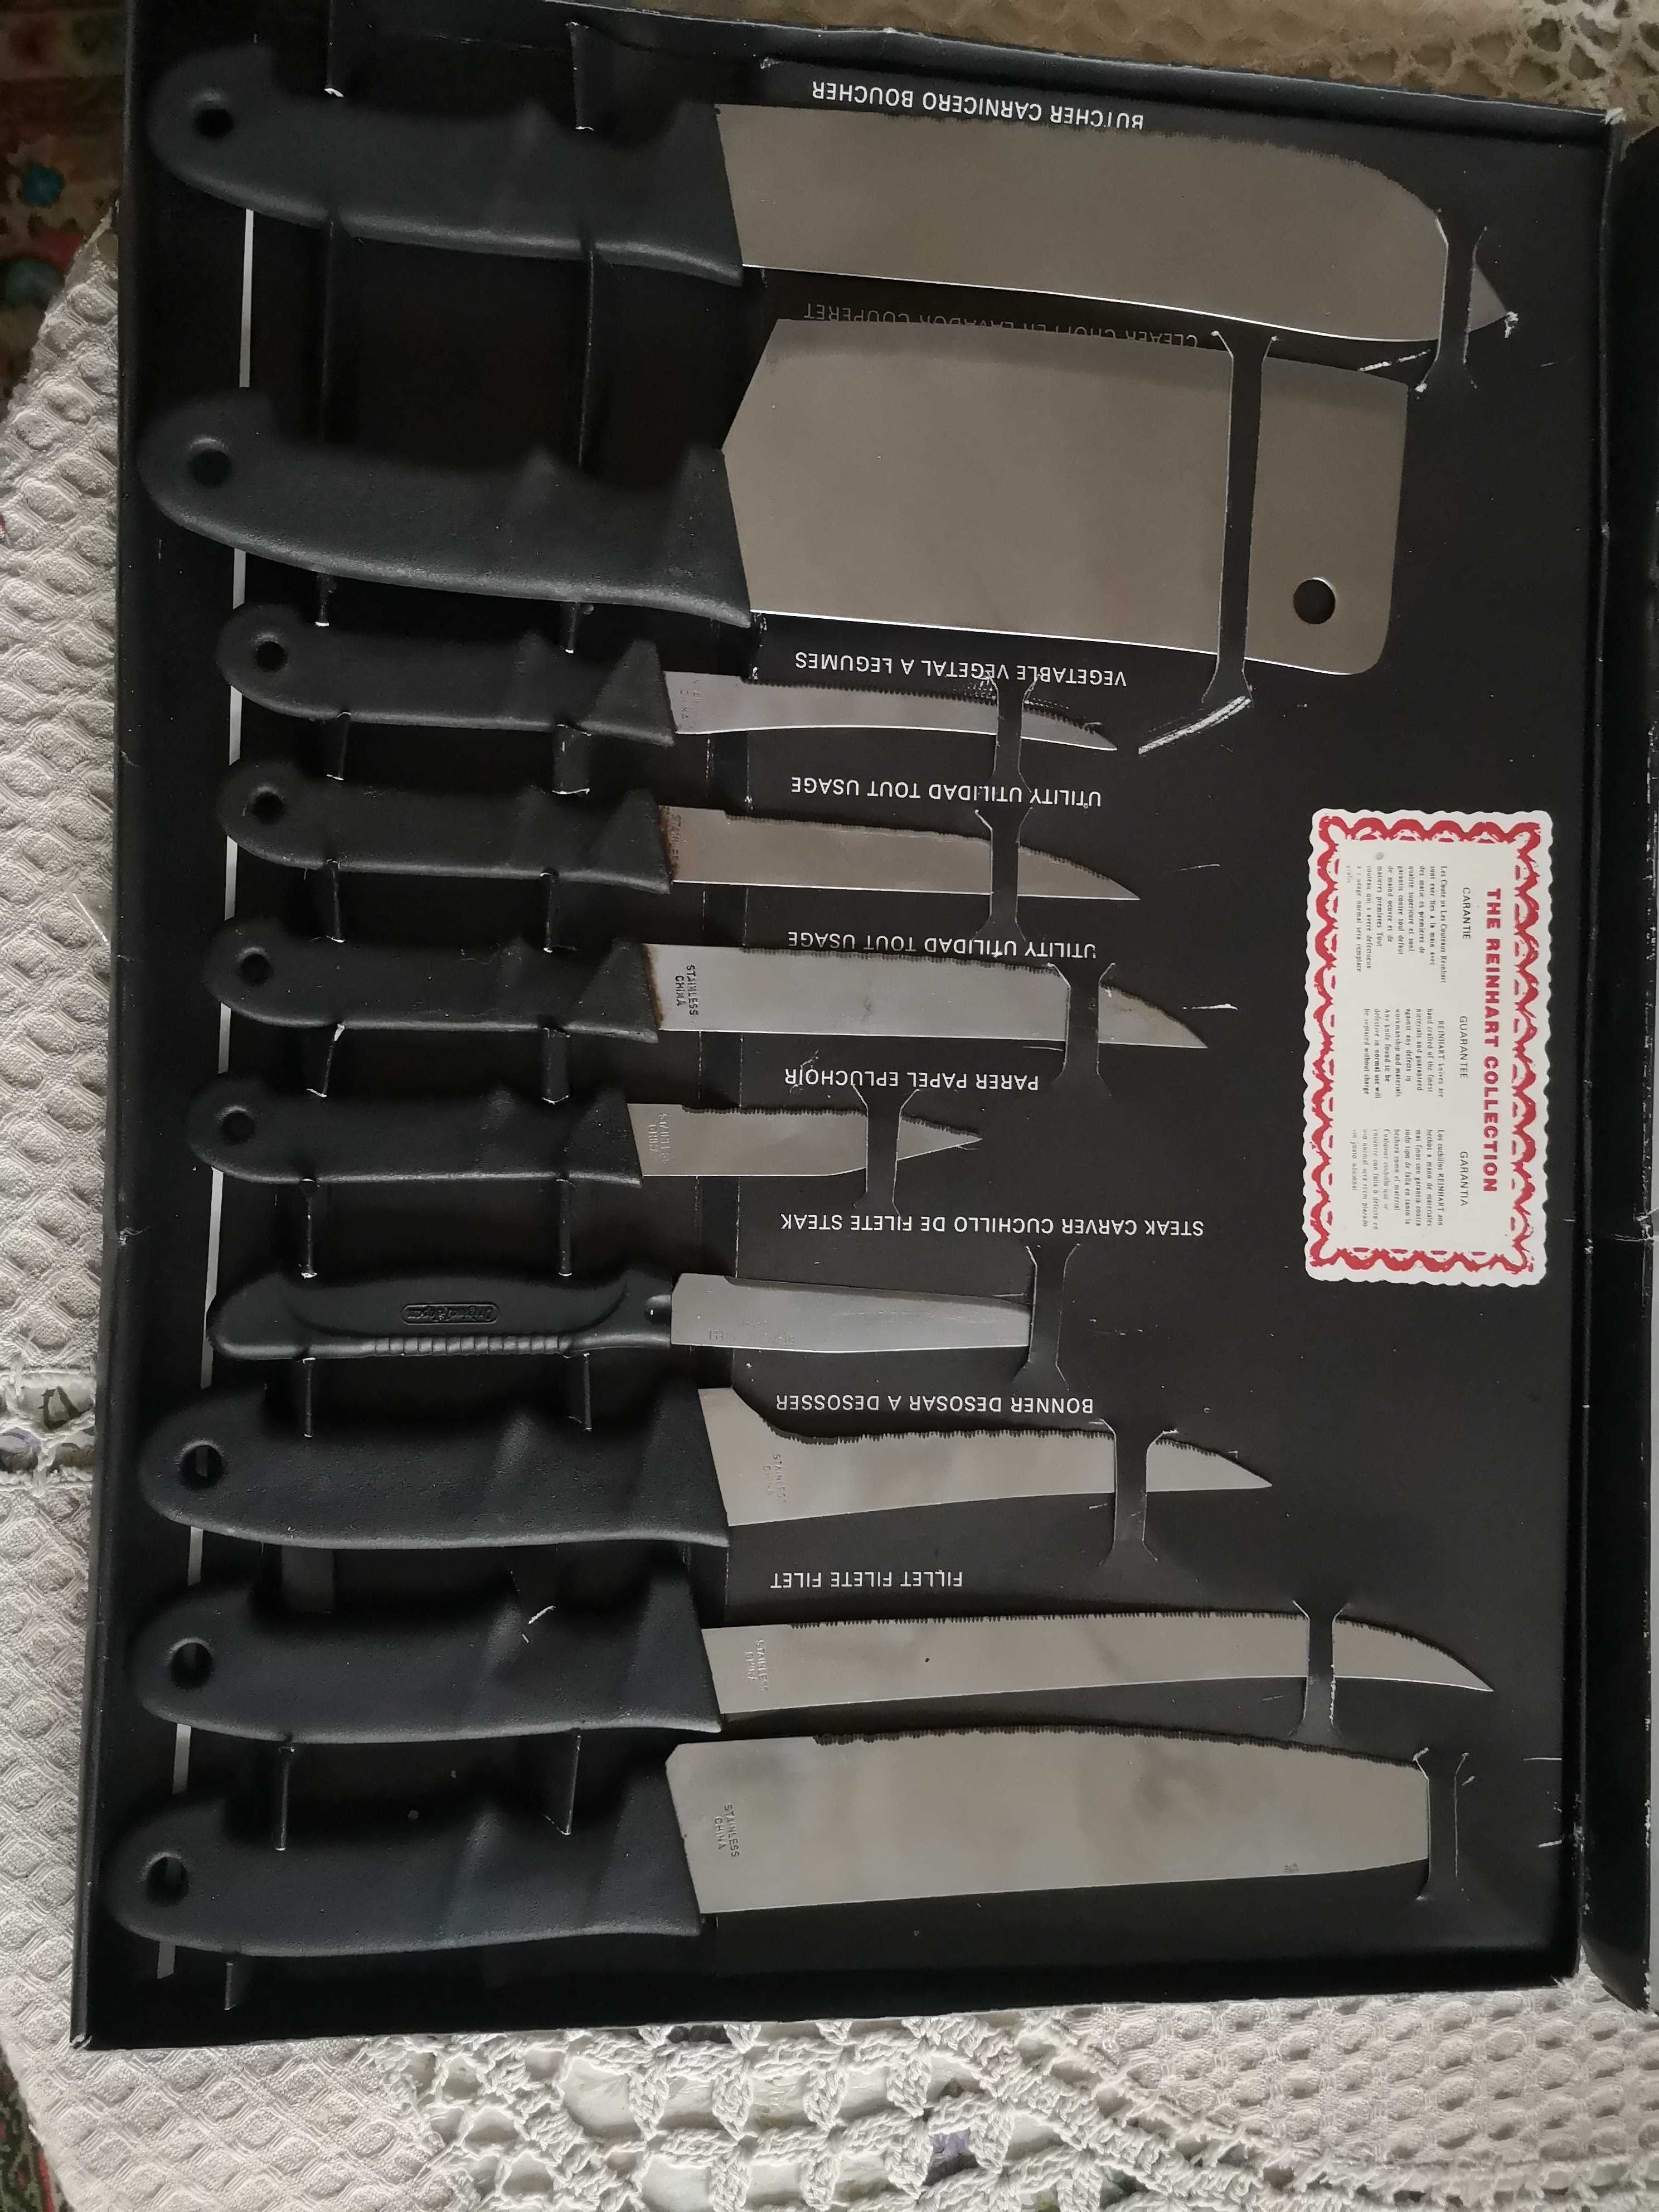 Продам набор кухонных ножей